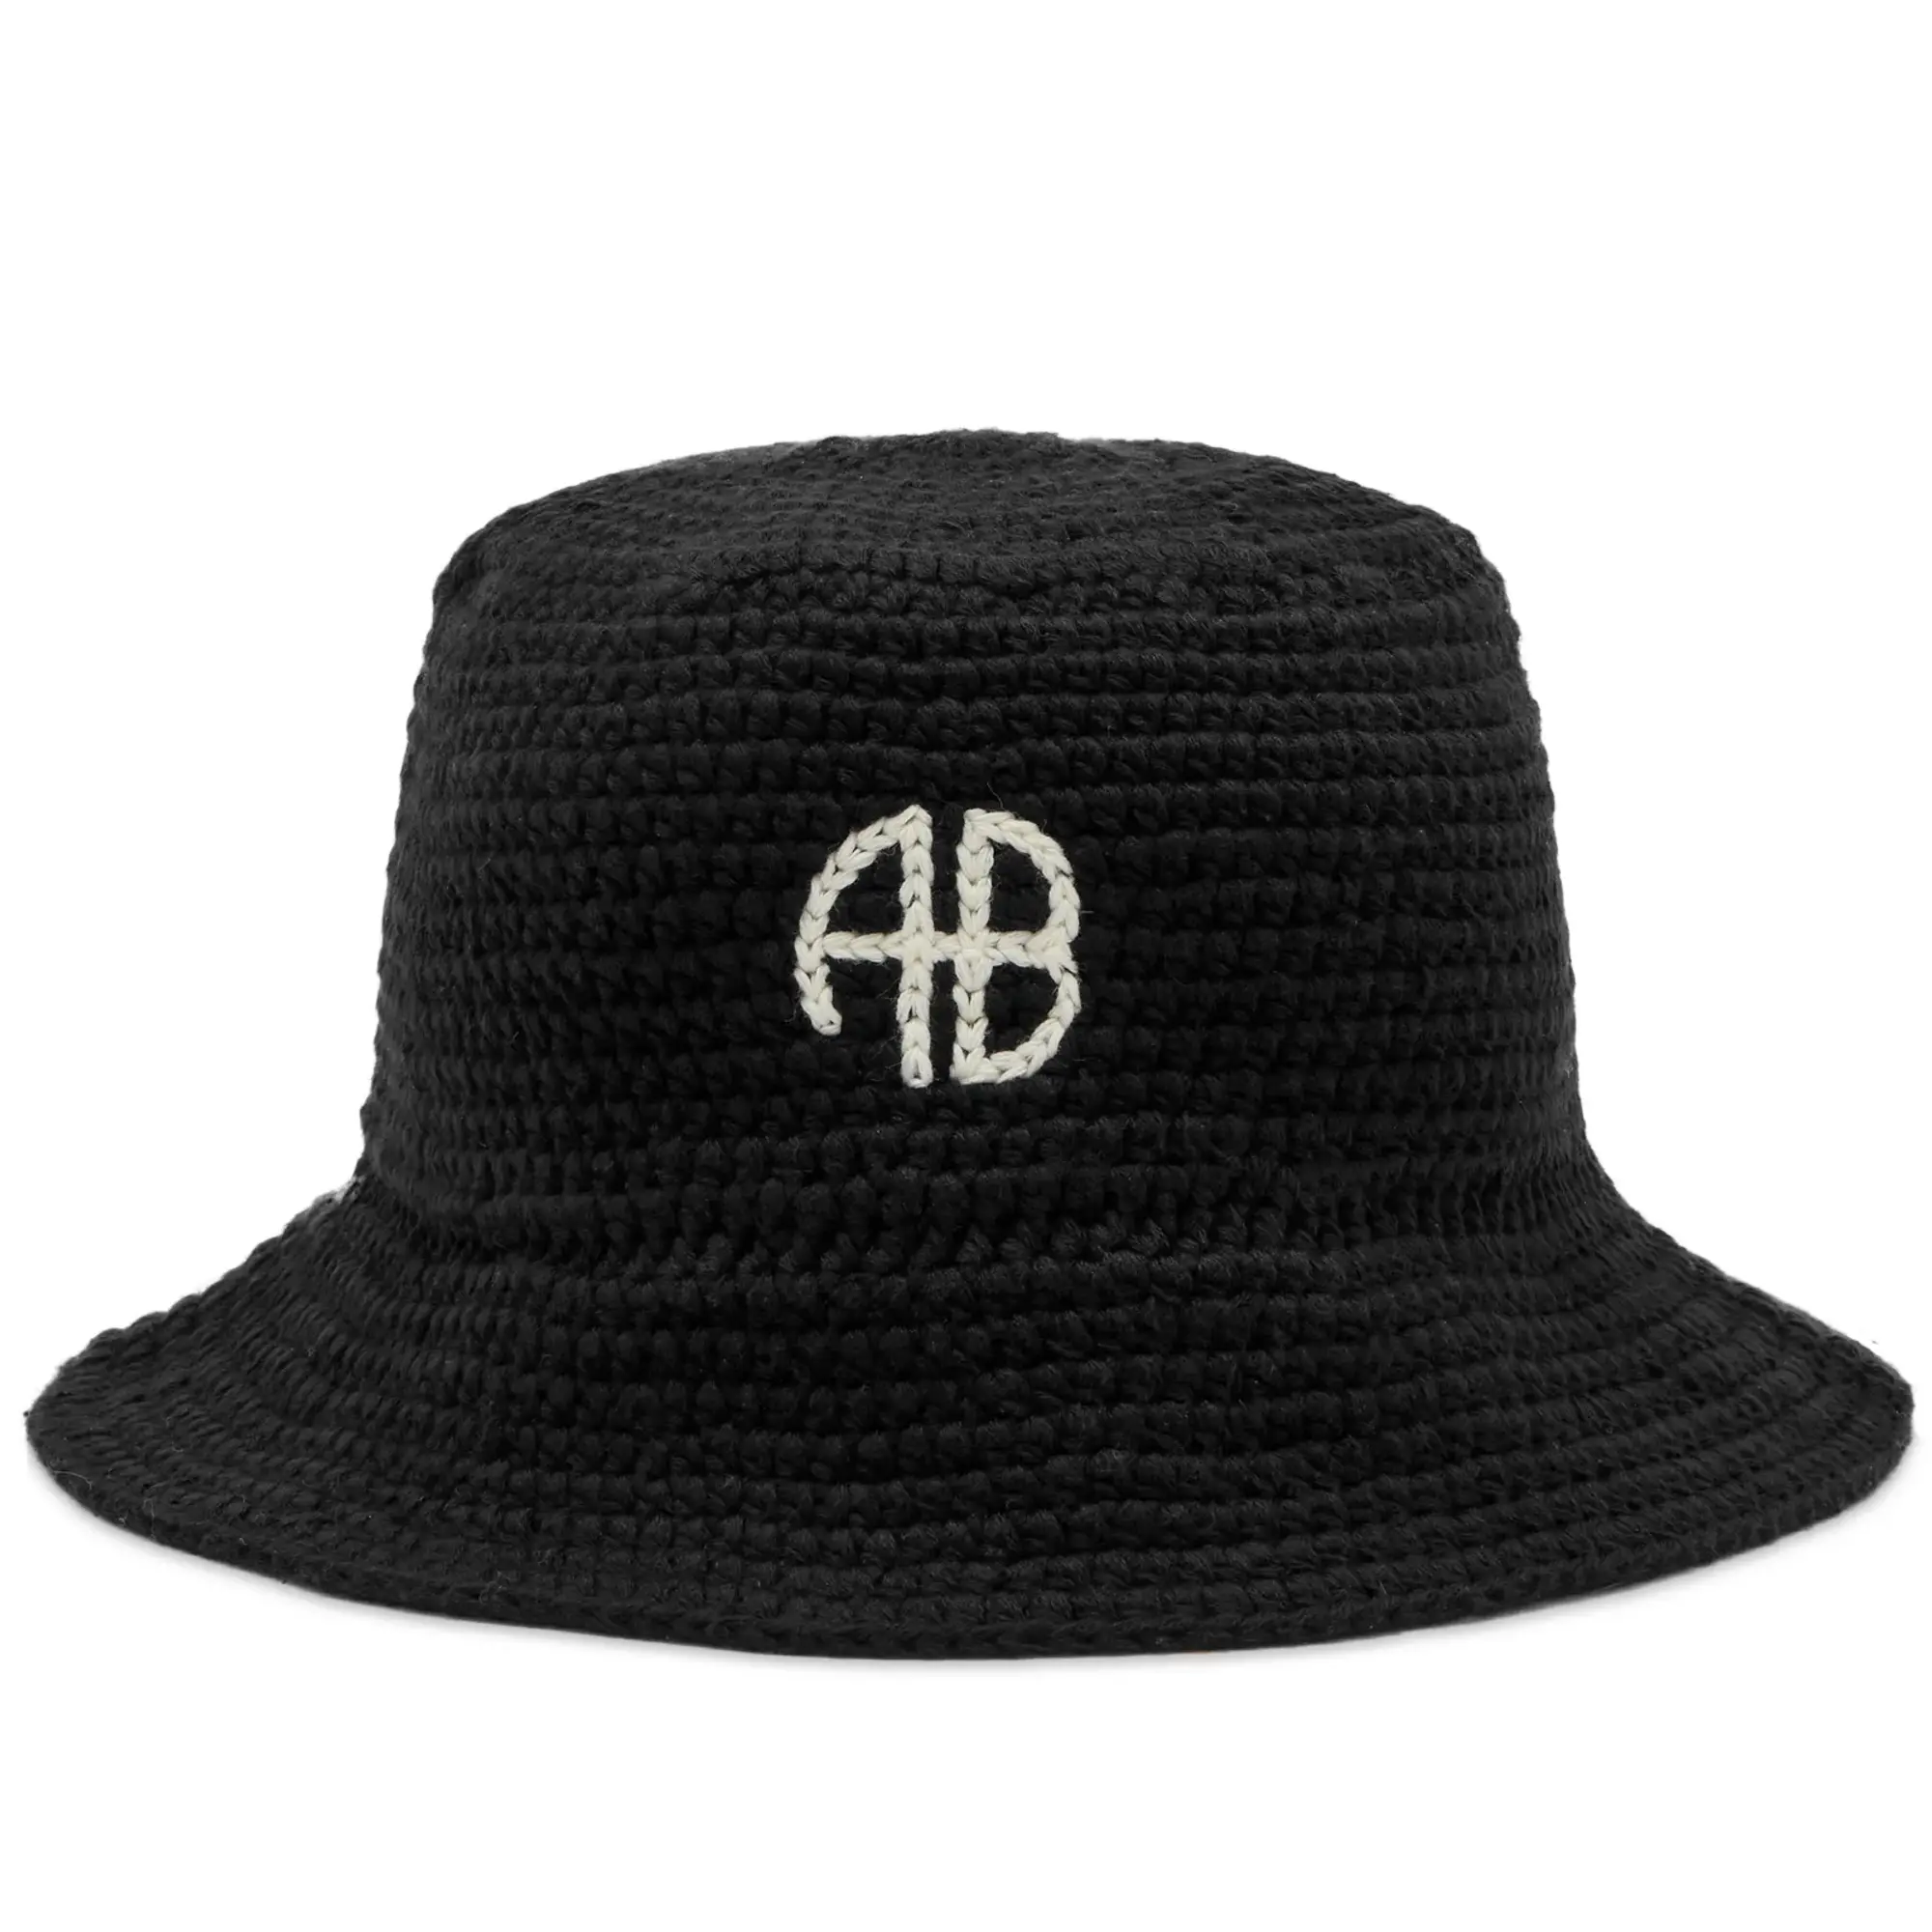 Anine Bing Women's Darra Logo Bucket Hat Black